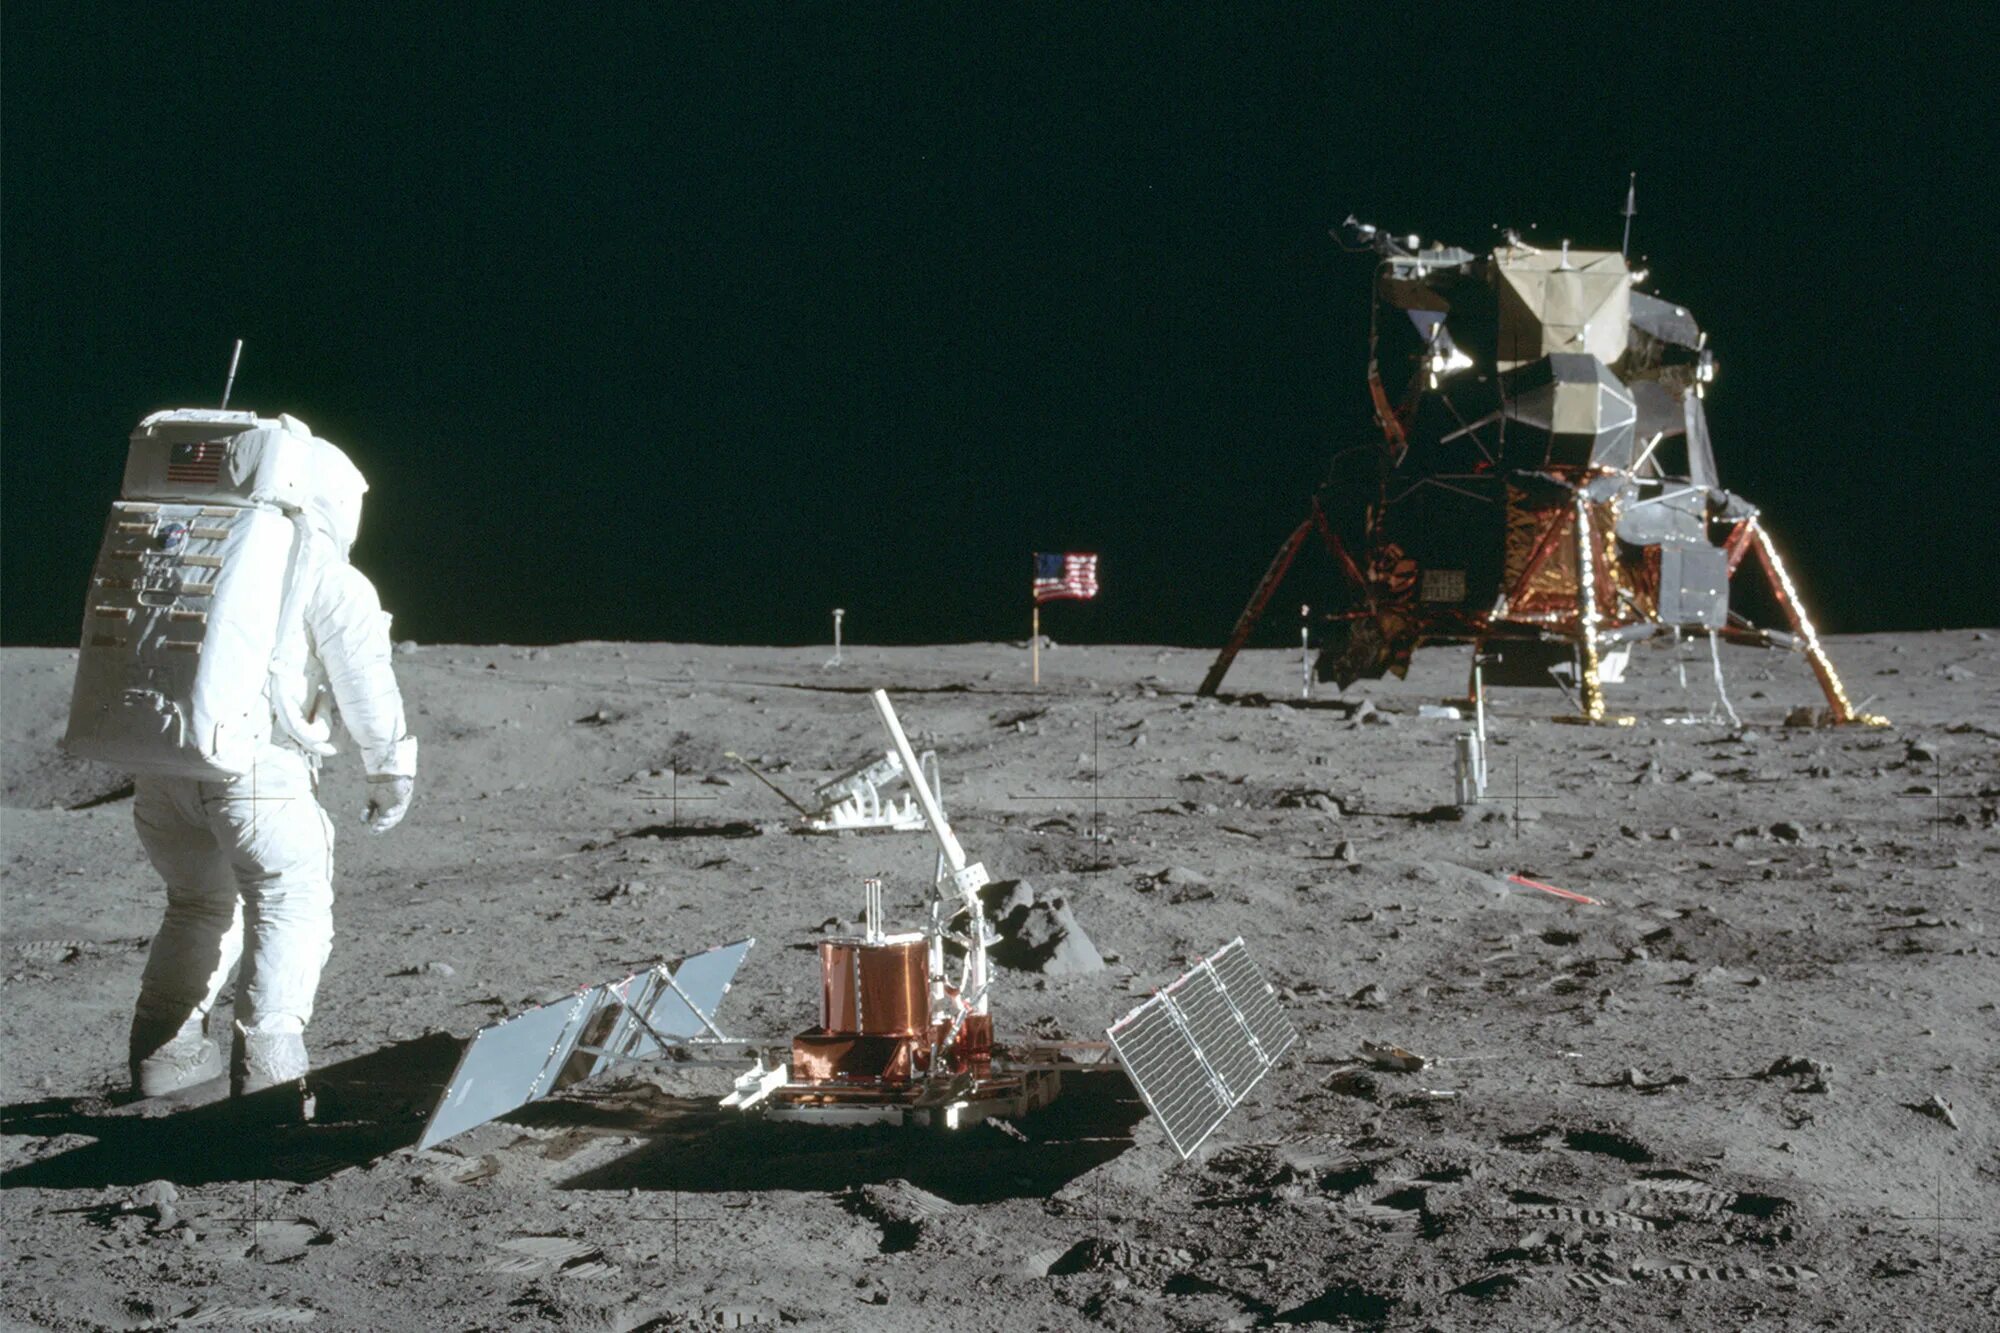 Миссия Аполлон 11. Старт Аполлона 11. Апполо 11 на Луне. Man landed on the moon